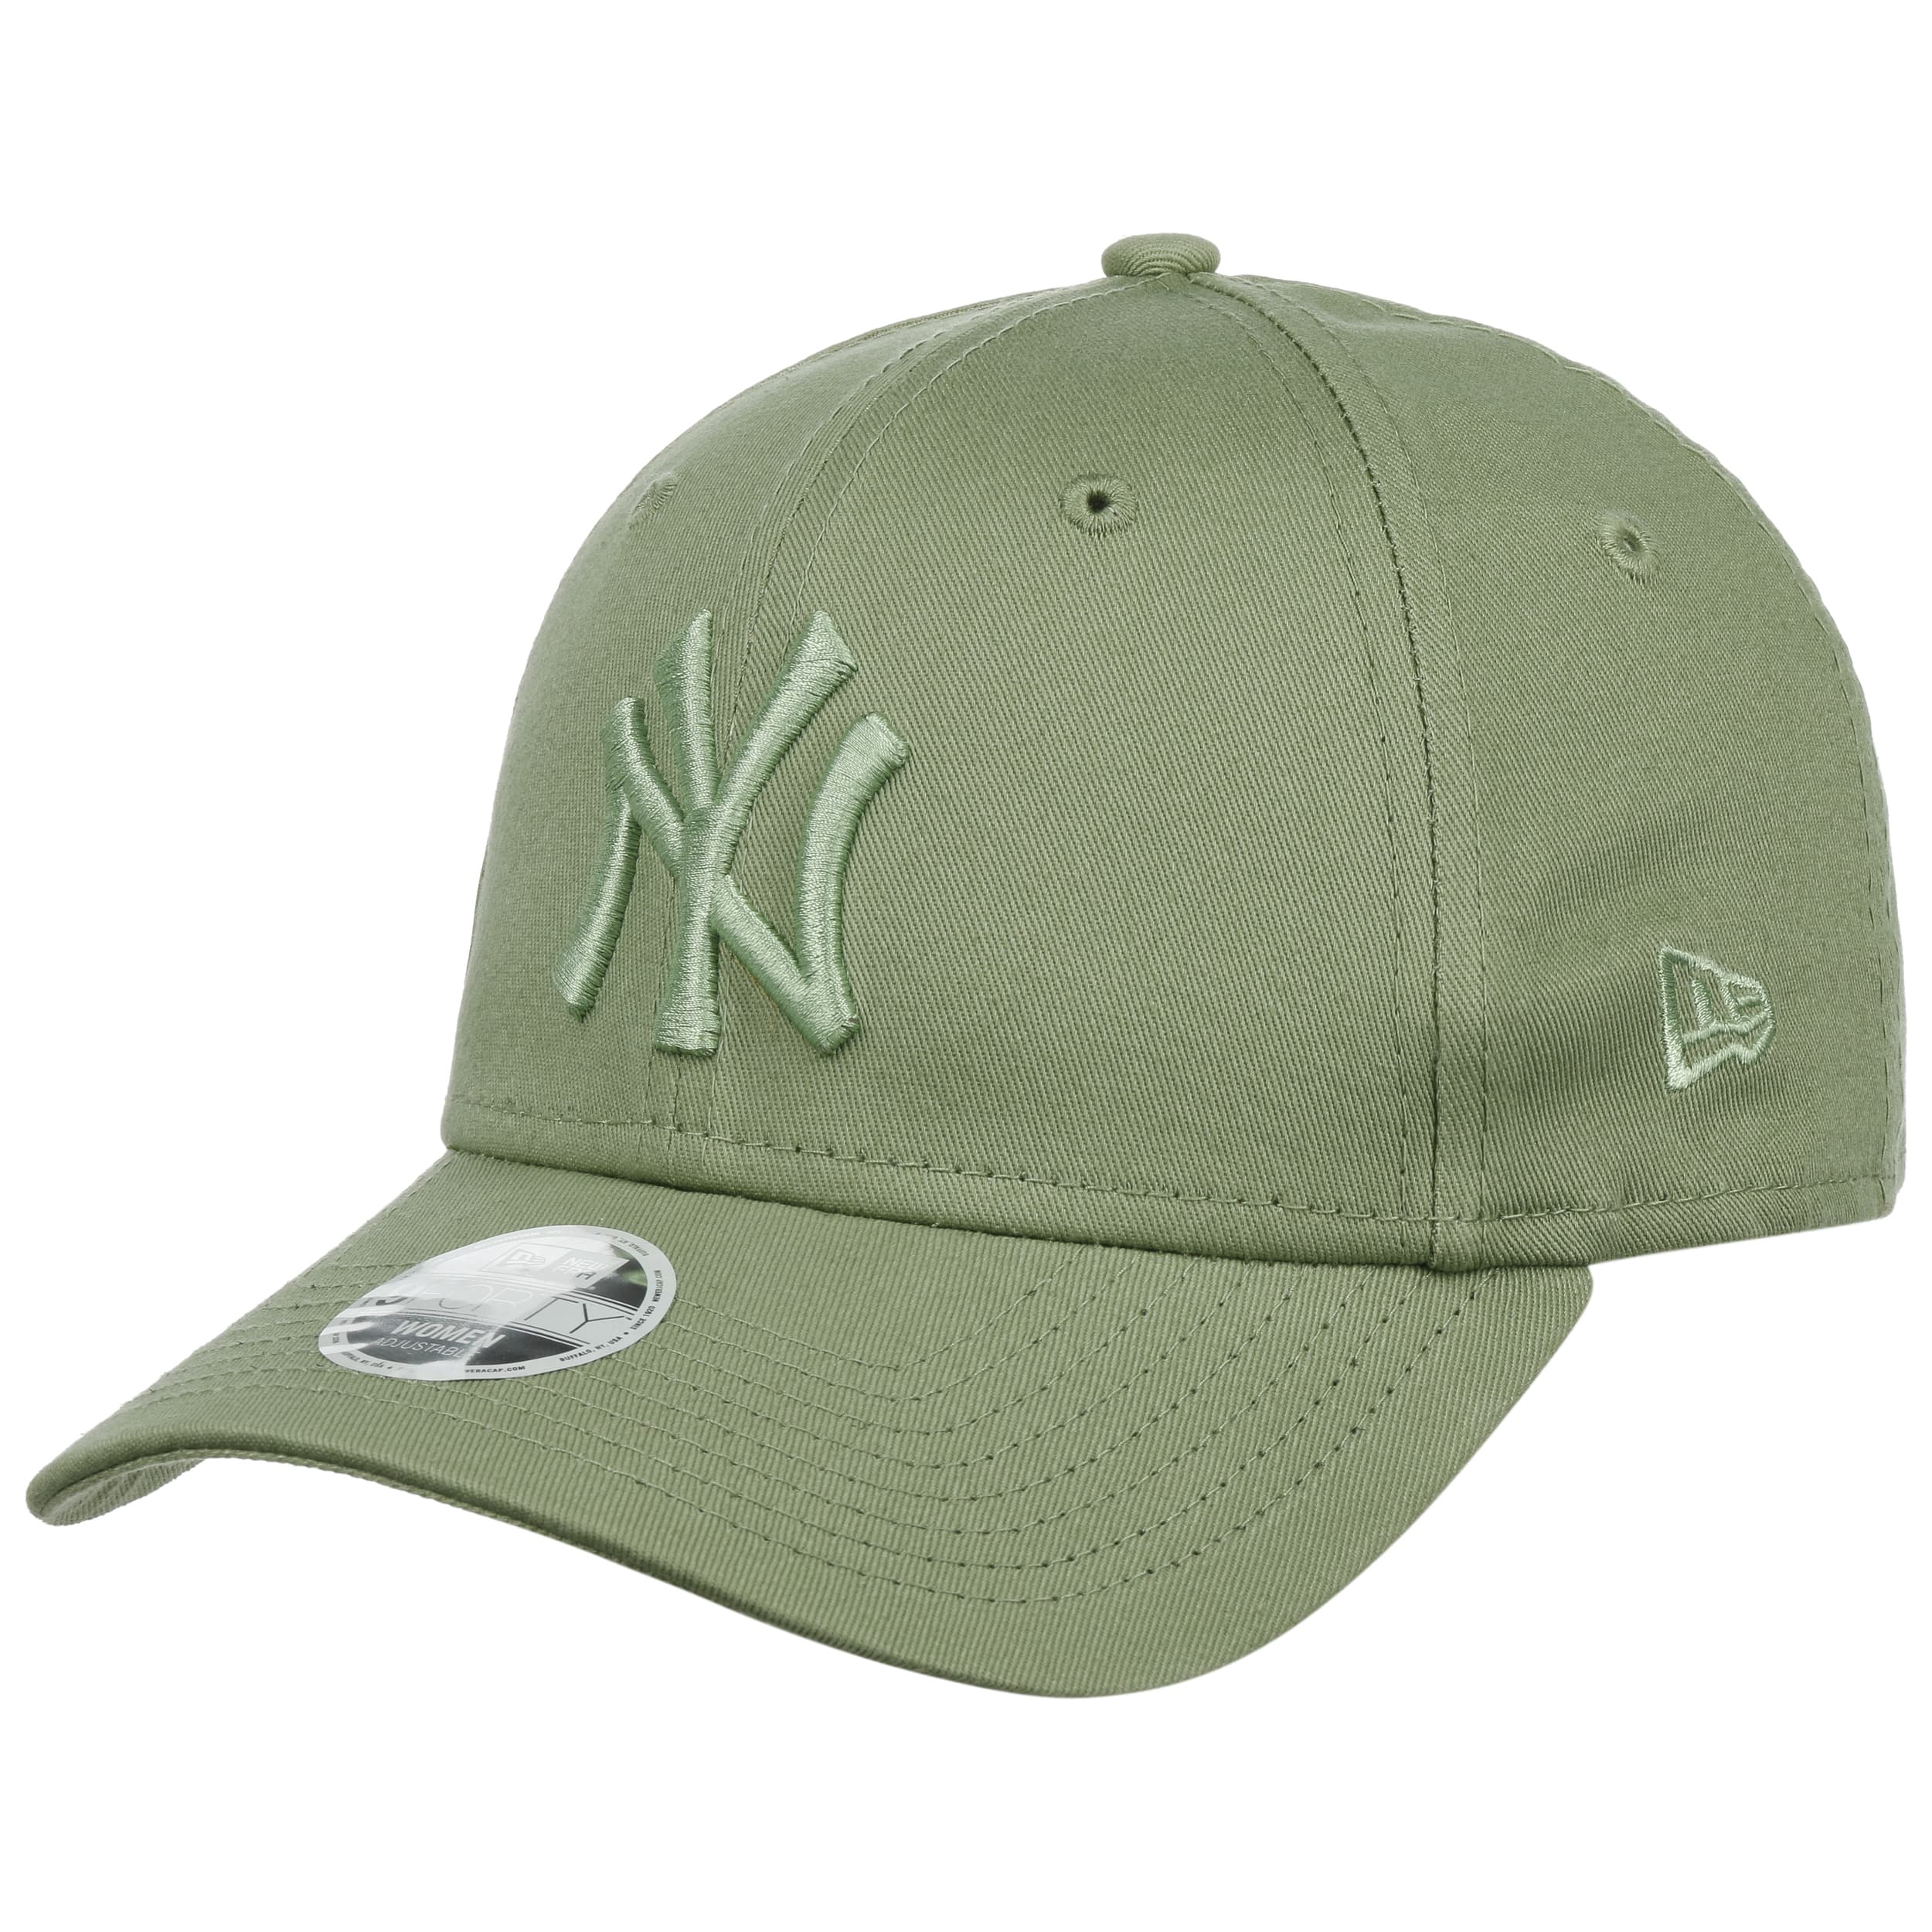 New York Yankees Hat Yankees Cap Women's Baseball Cap 